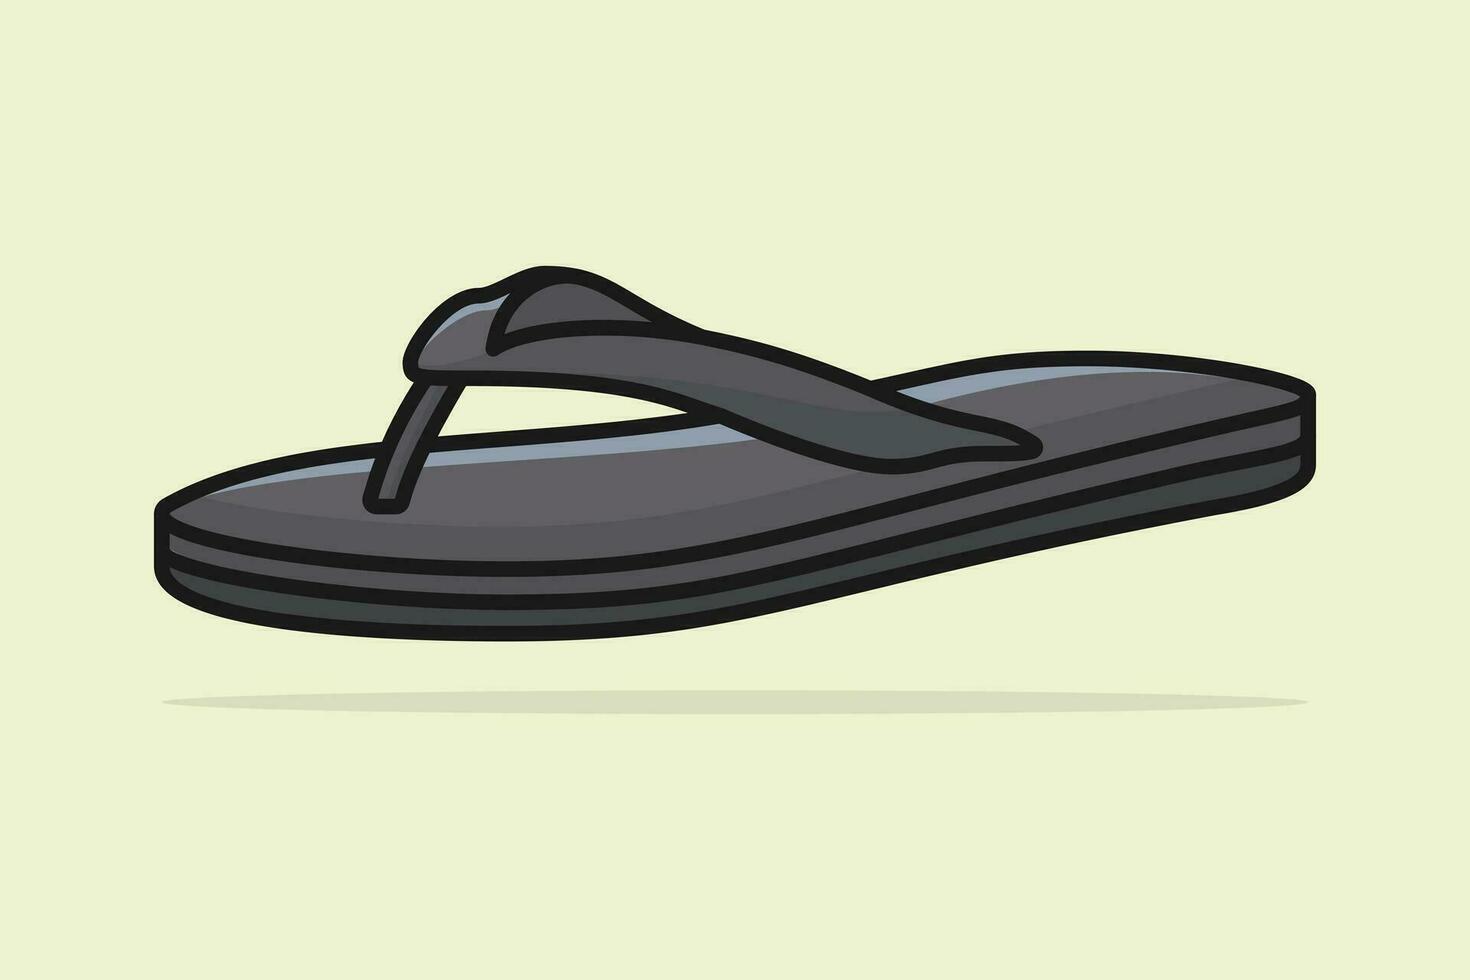 semplice uomini spiaggia calzature pantofola o sandalo vettore illustrazione. bellezza moda oggetti icona concetto. ragazzi unico stile pantofola vettore design con ombra.